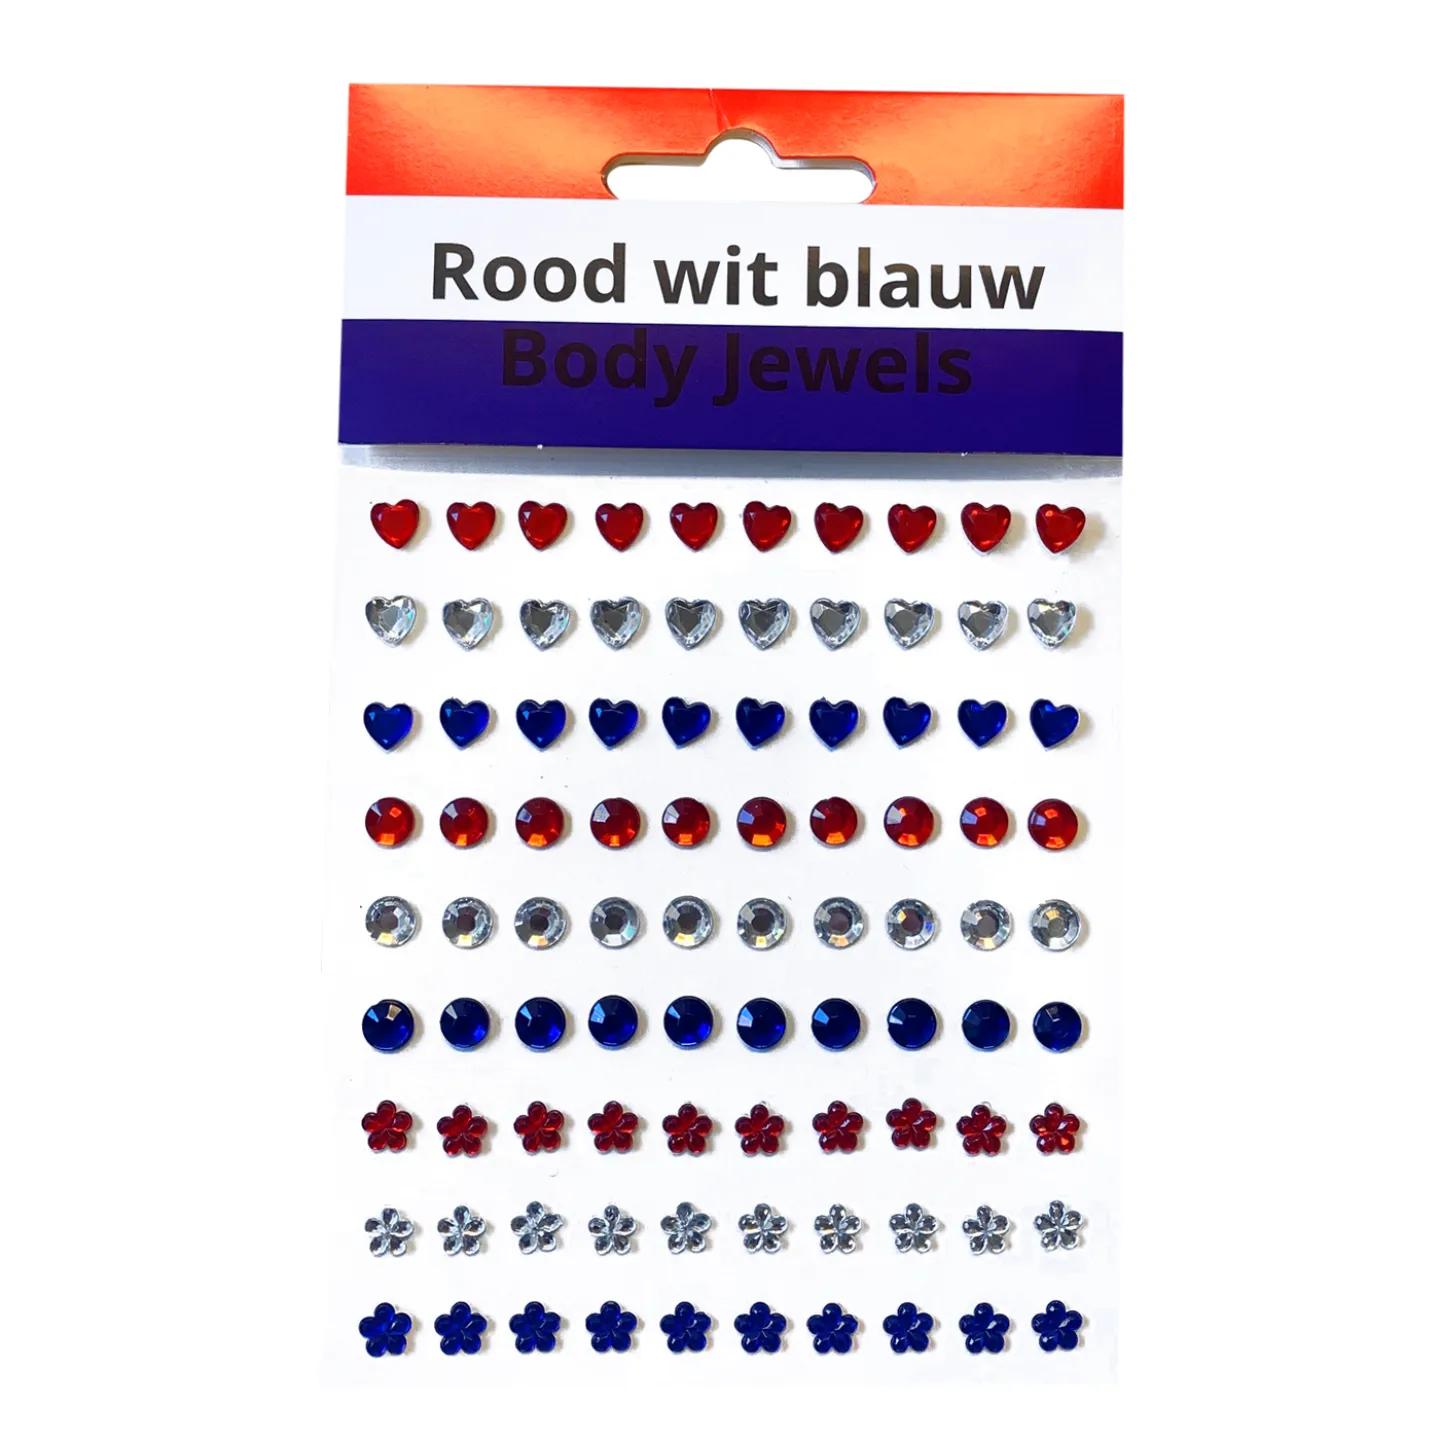 Koningsdag body jewels rood/wit/blauw kopen.